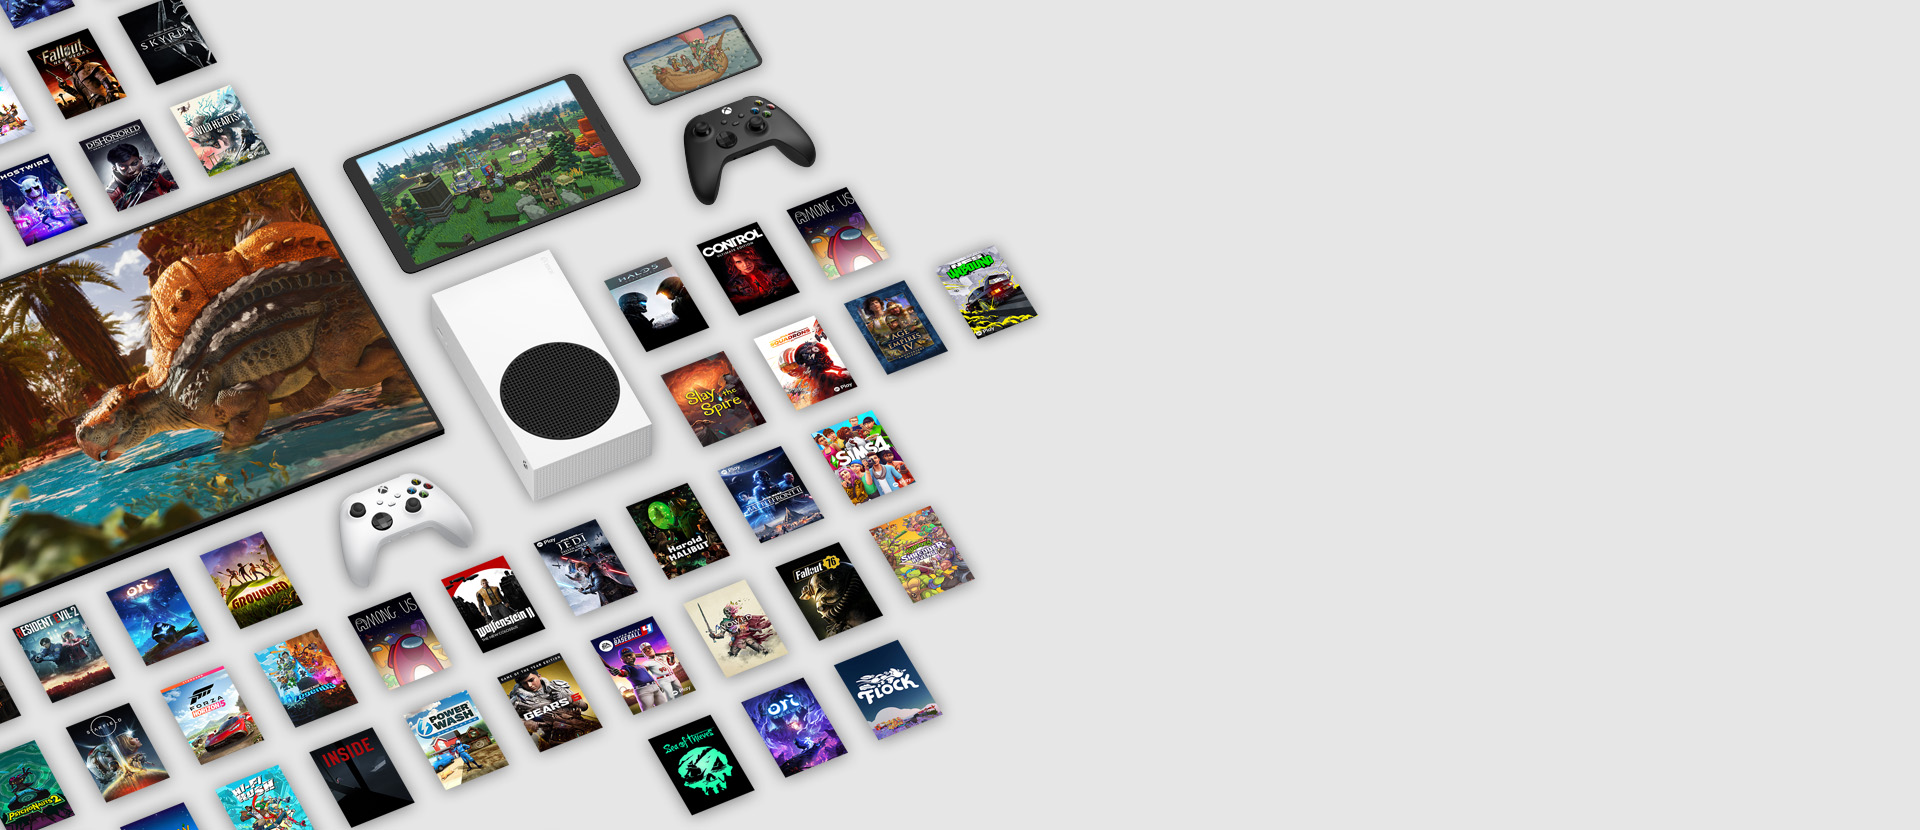 Des images de plusieurs jeux maintenant offerts avec le Xbox Game Pass Ultimate entourent plusieurs appareils, notamment une console, un téléphone cellulaire, une tablette, un téléviseur intelligent et des manettes.